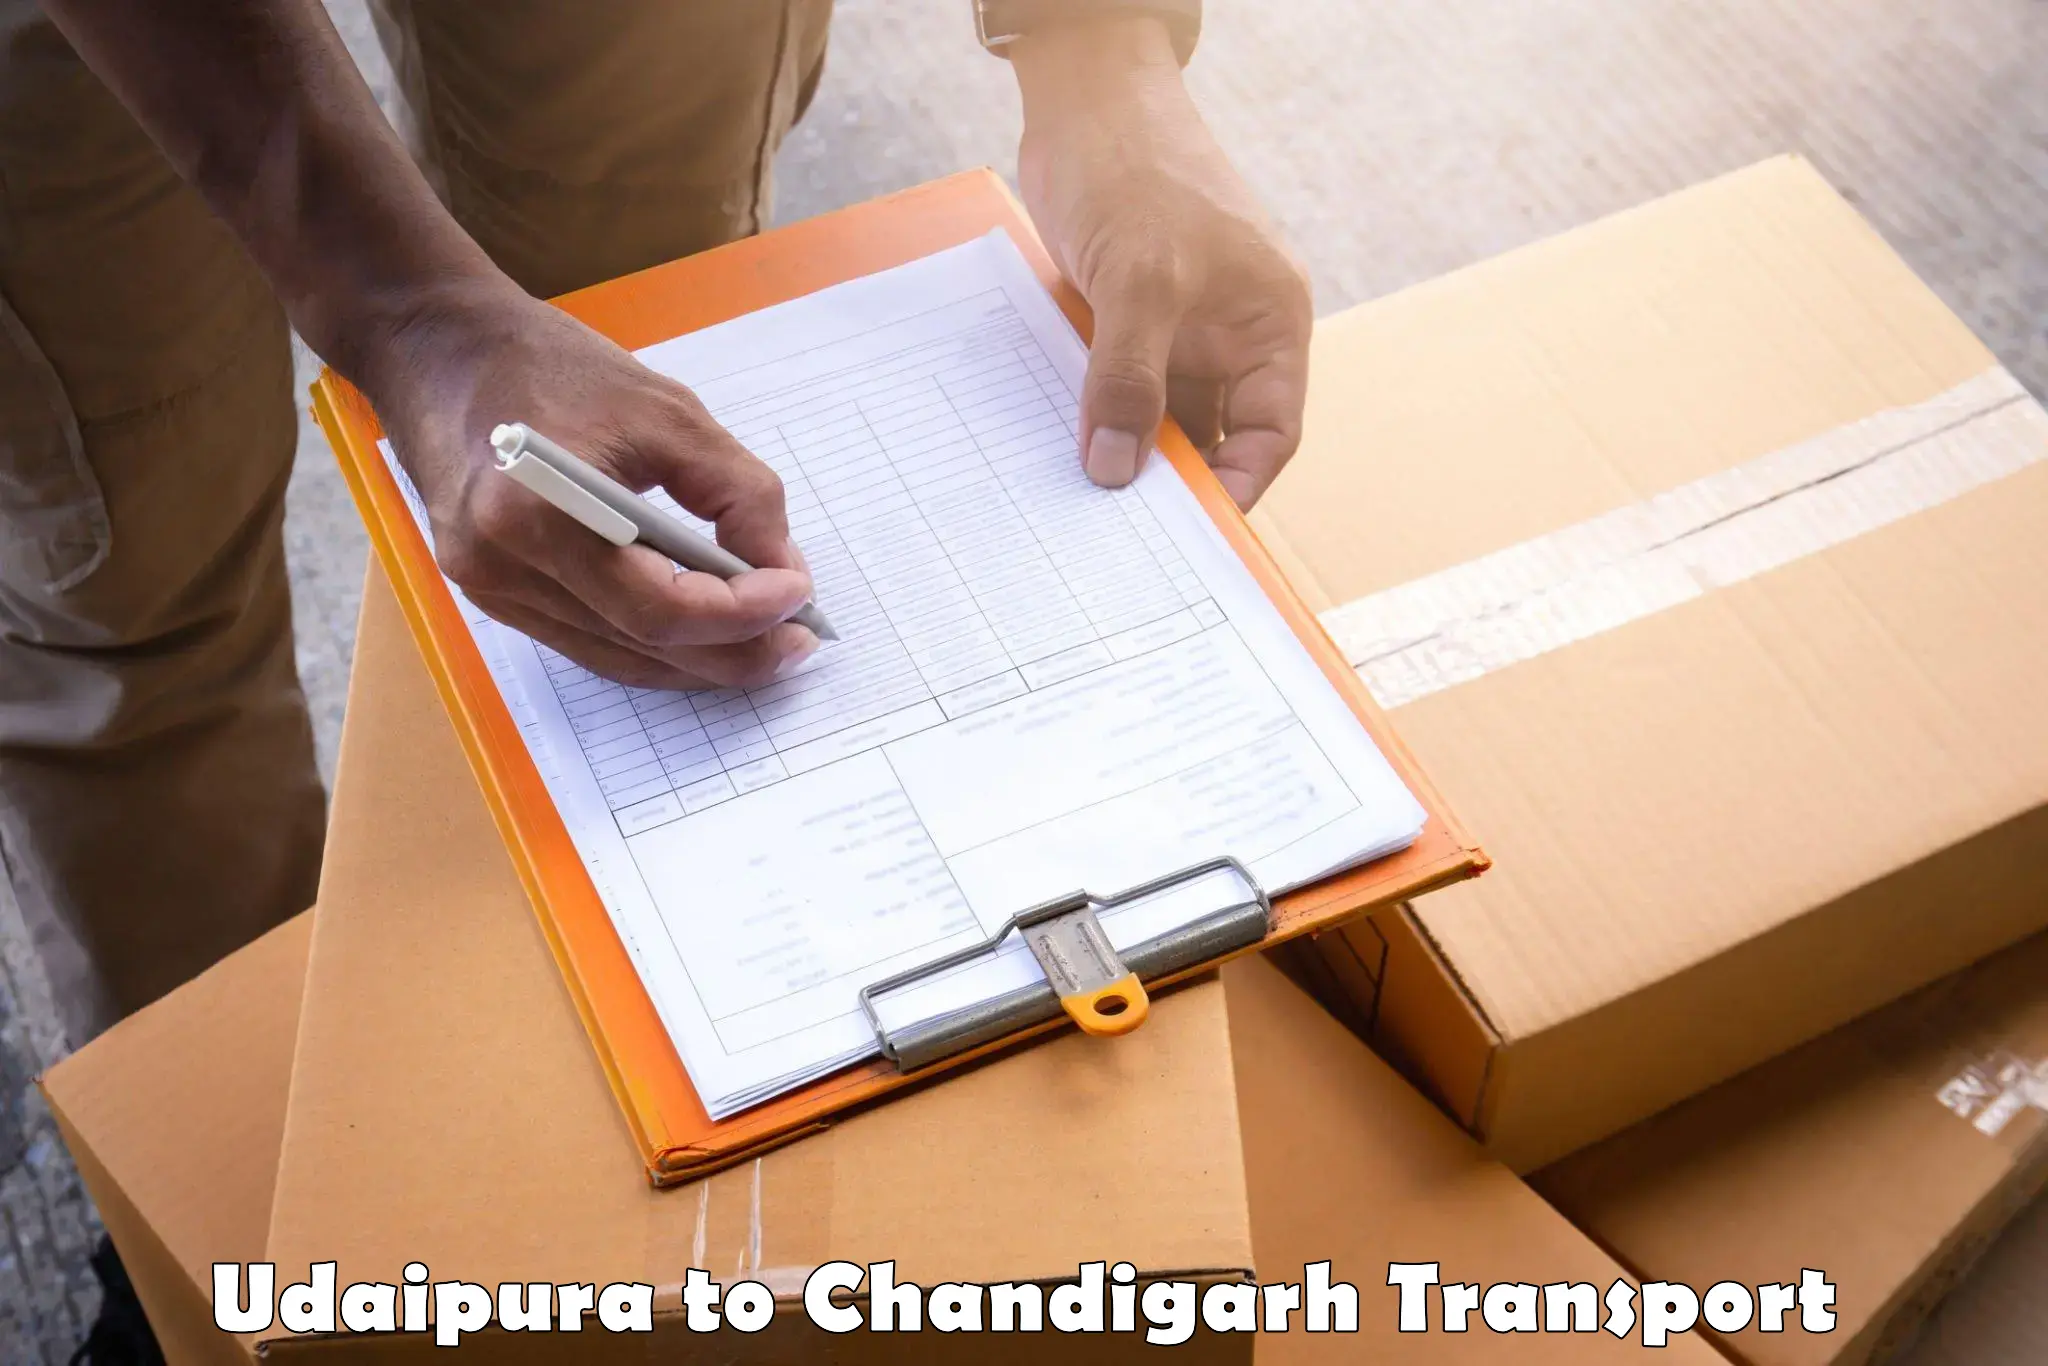 Online transport service Udaipura to Chandigarh